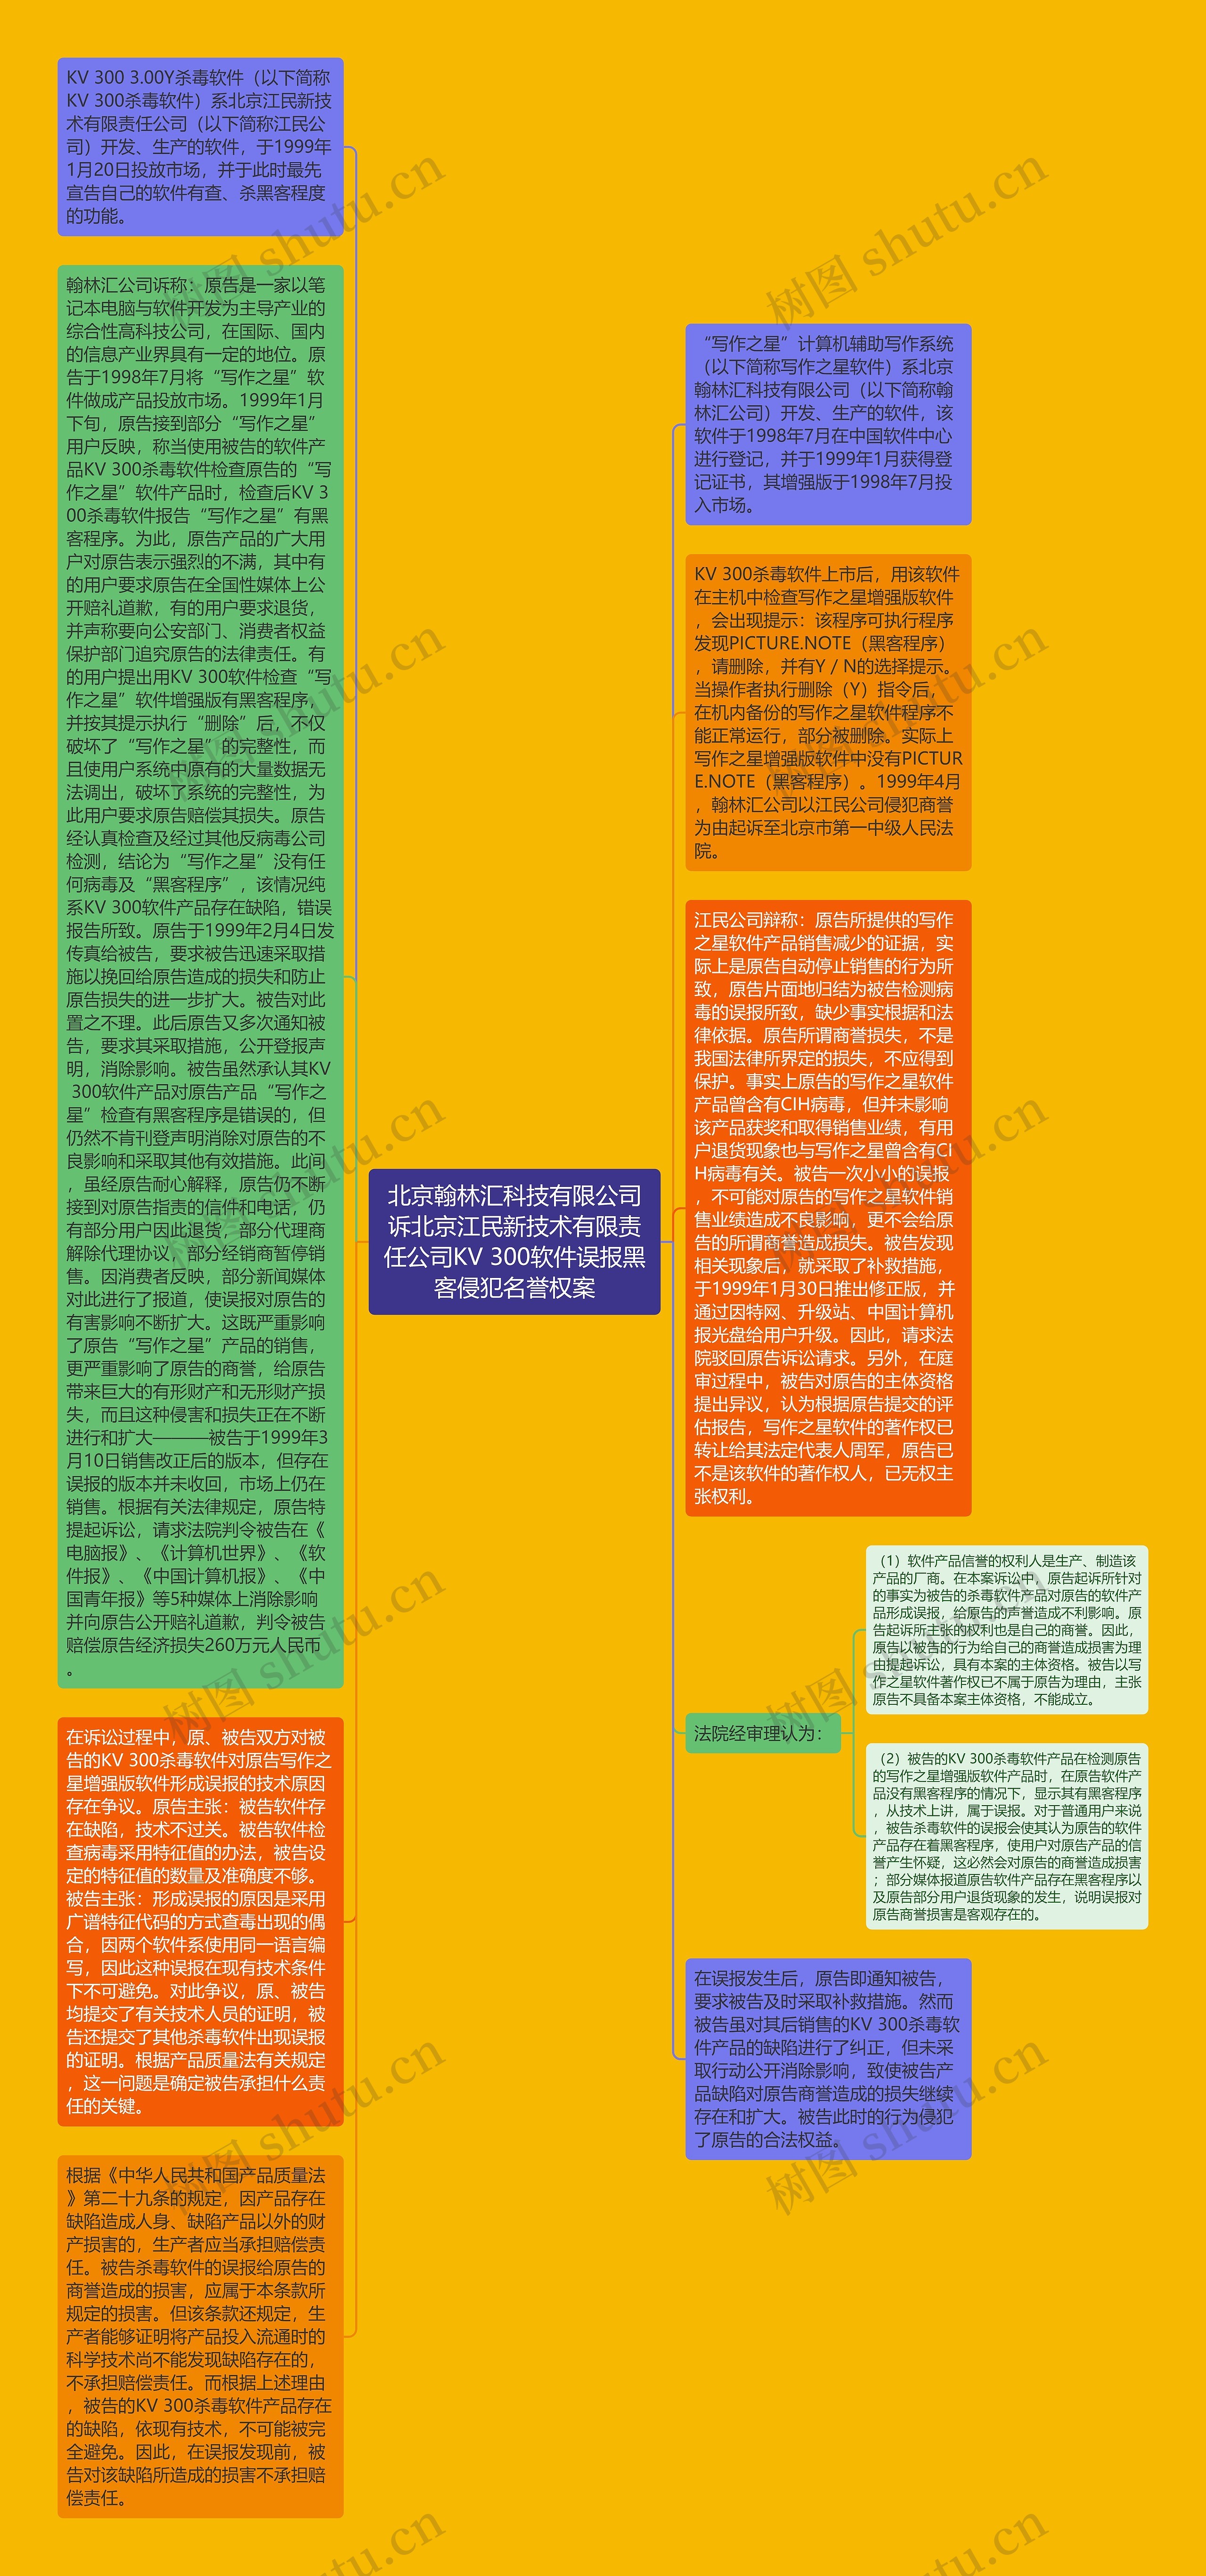 北京翰林汇科技有限公司诉北京江民新技术有限责任公司KV 300软件误报黑客侵犯名誉权案